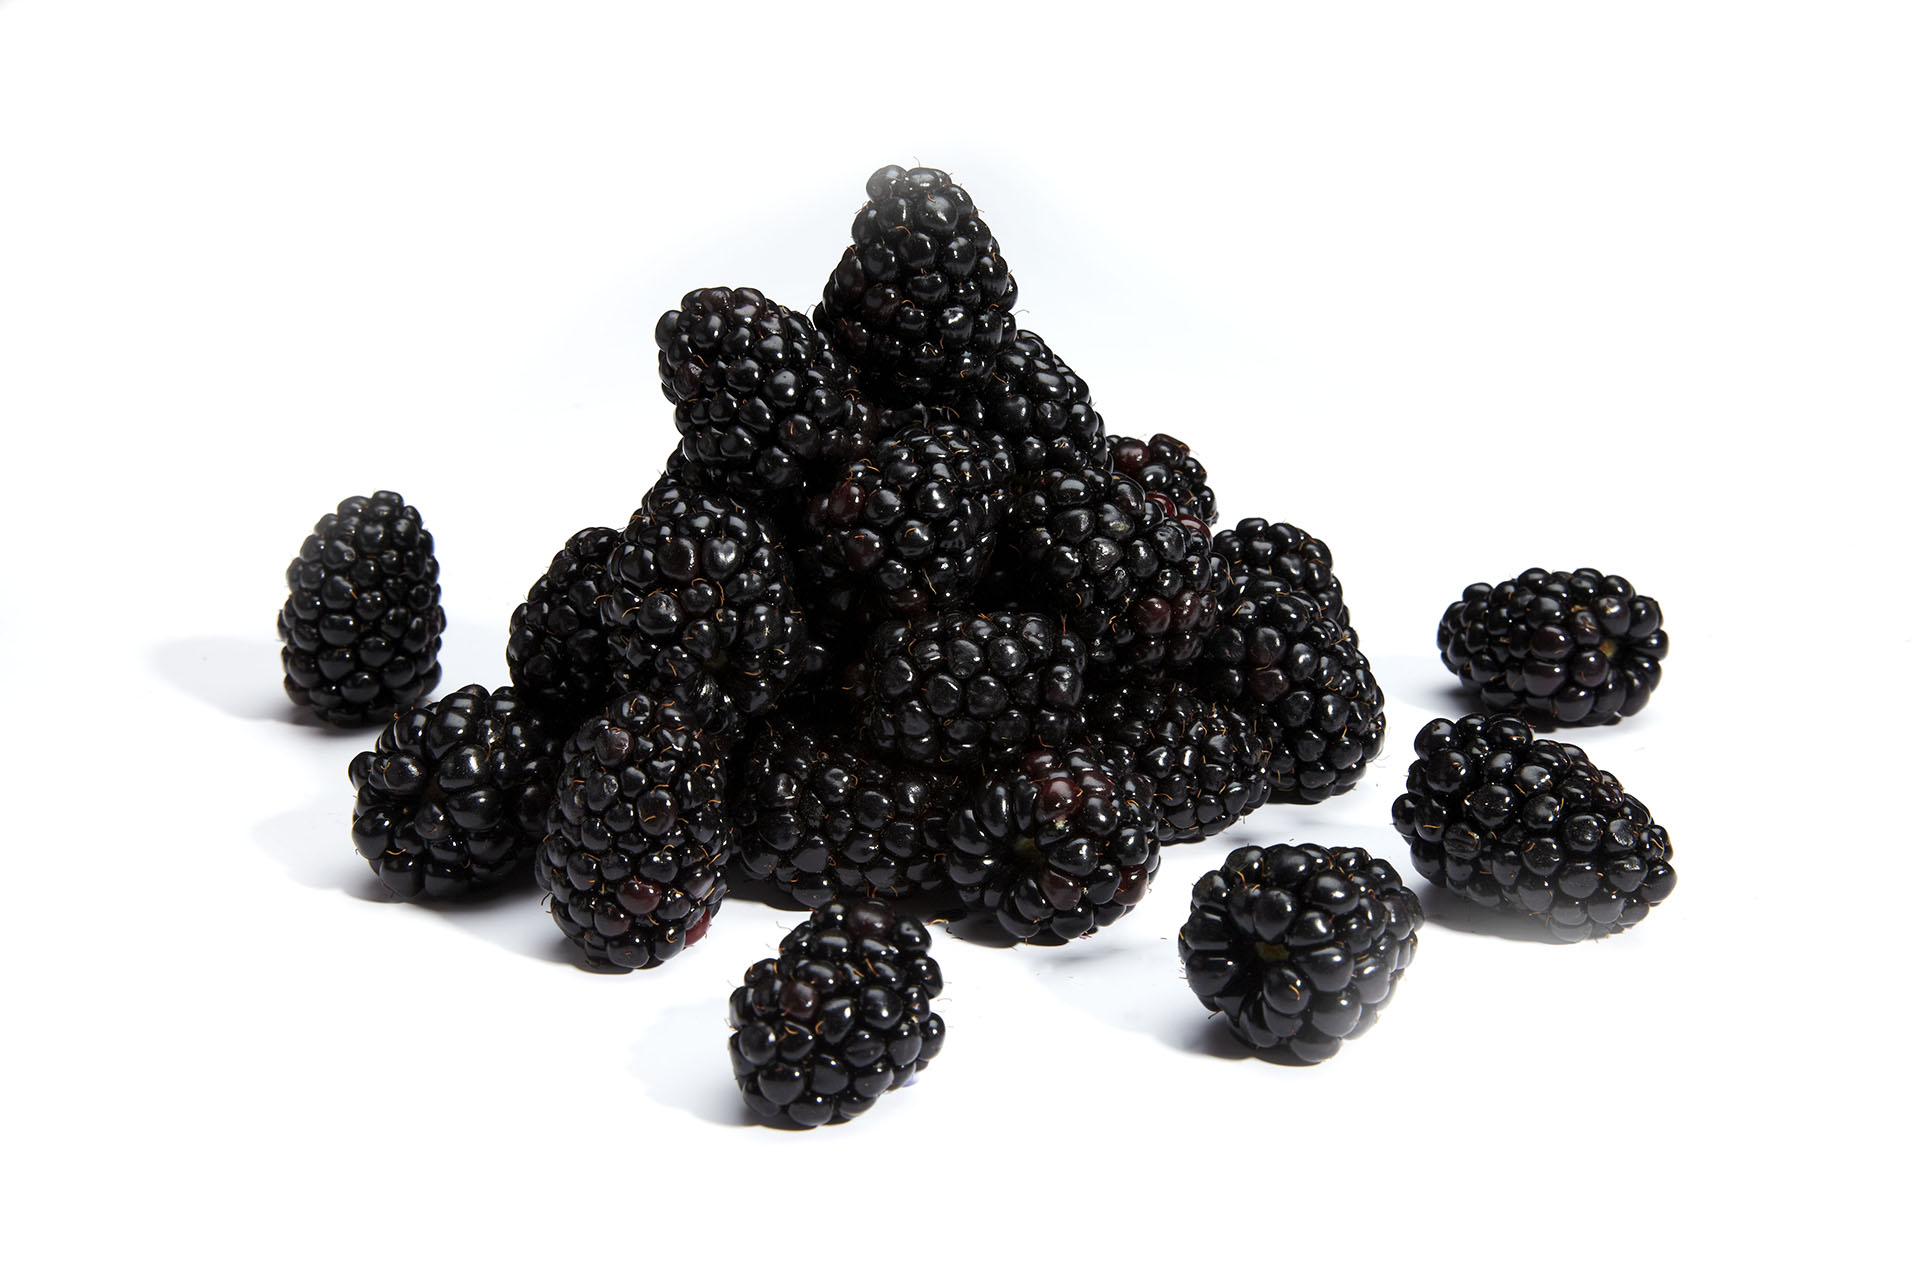 Pile of blackberries